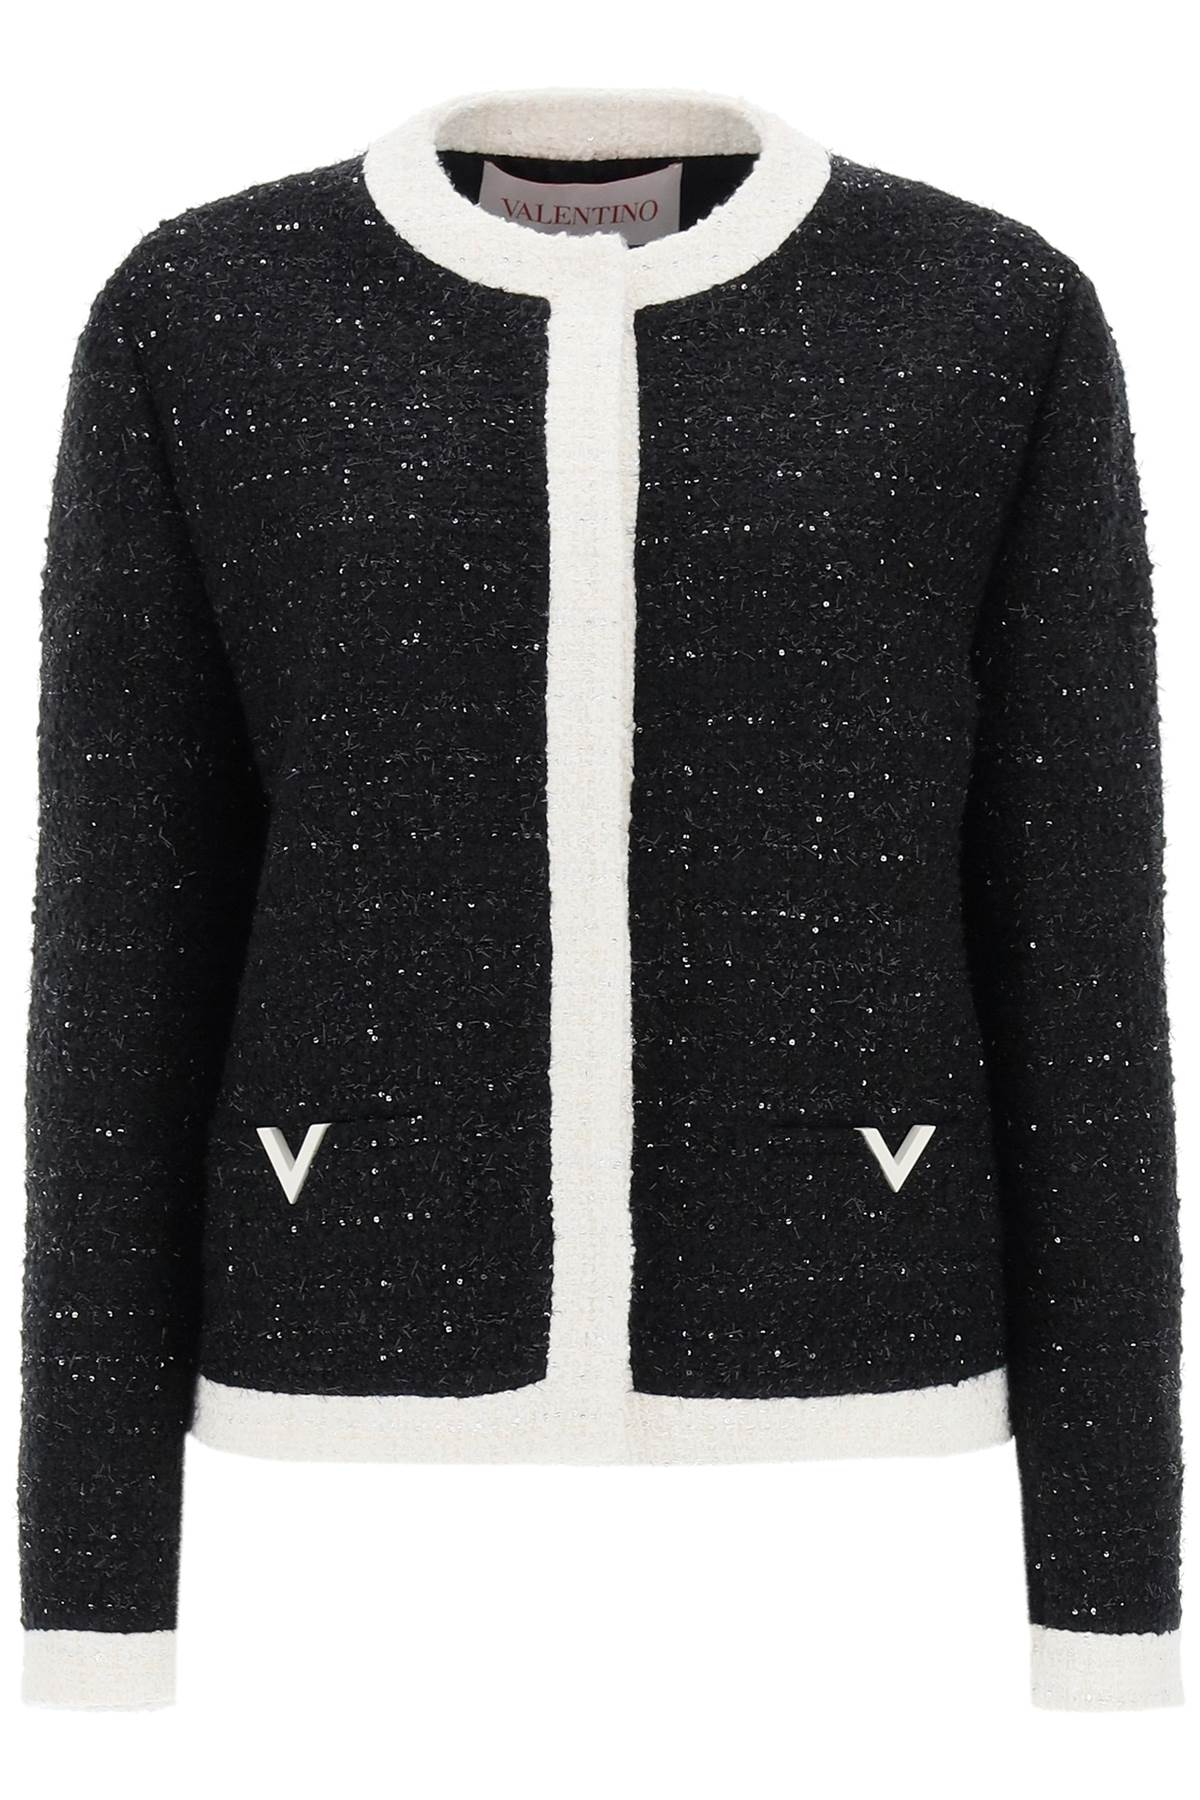 Valentino garavani glaze tweed jacket 4B3CE27P8C8 NERO LUREX AVORIO LUREX